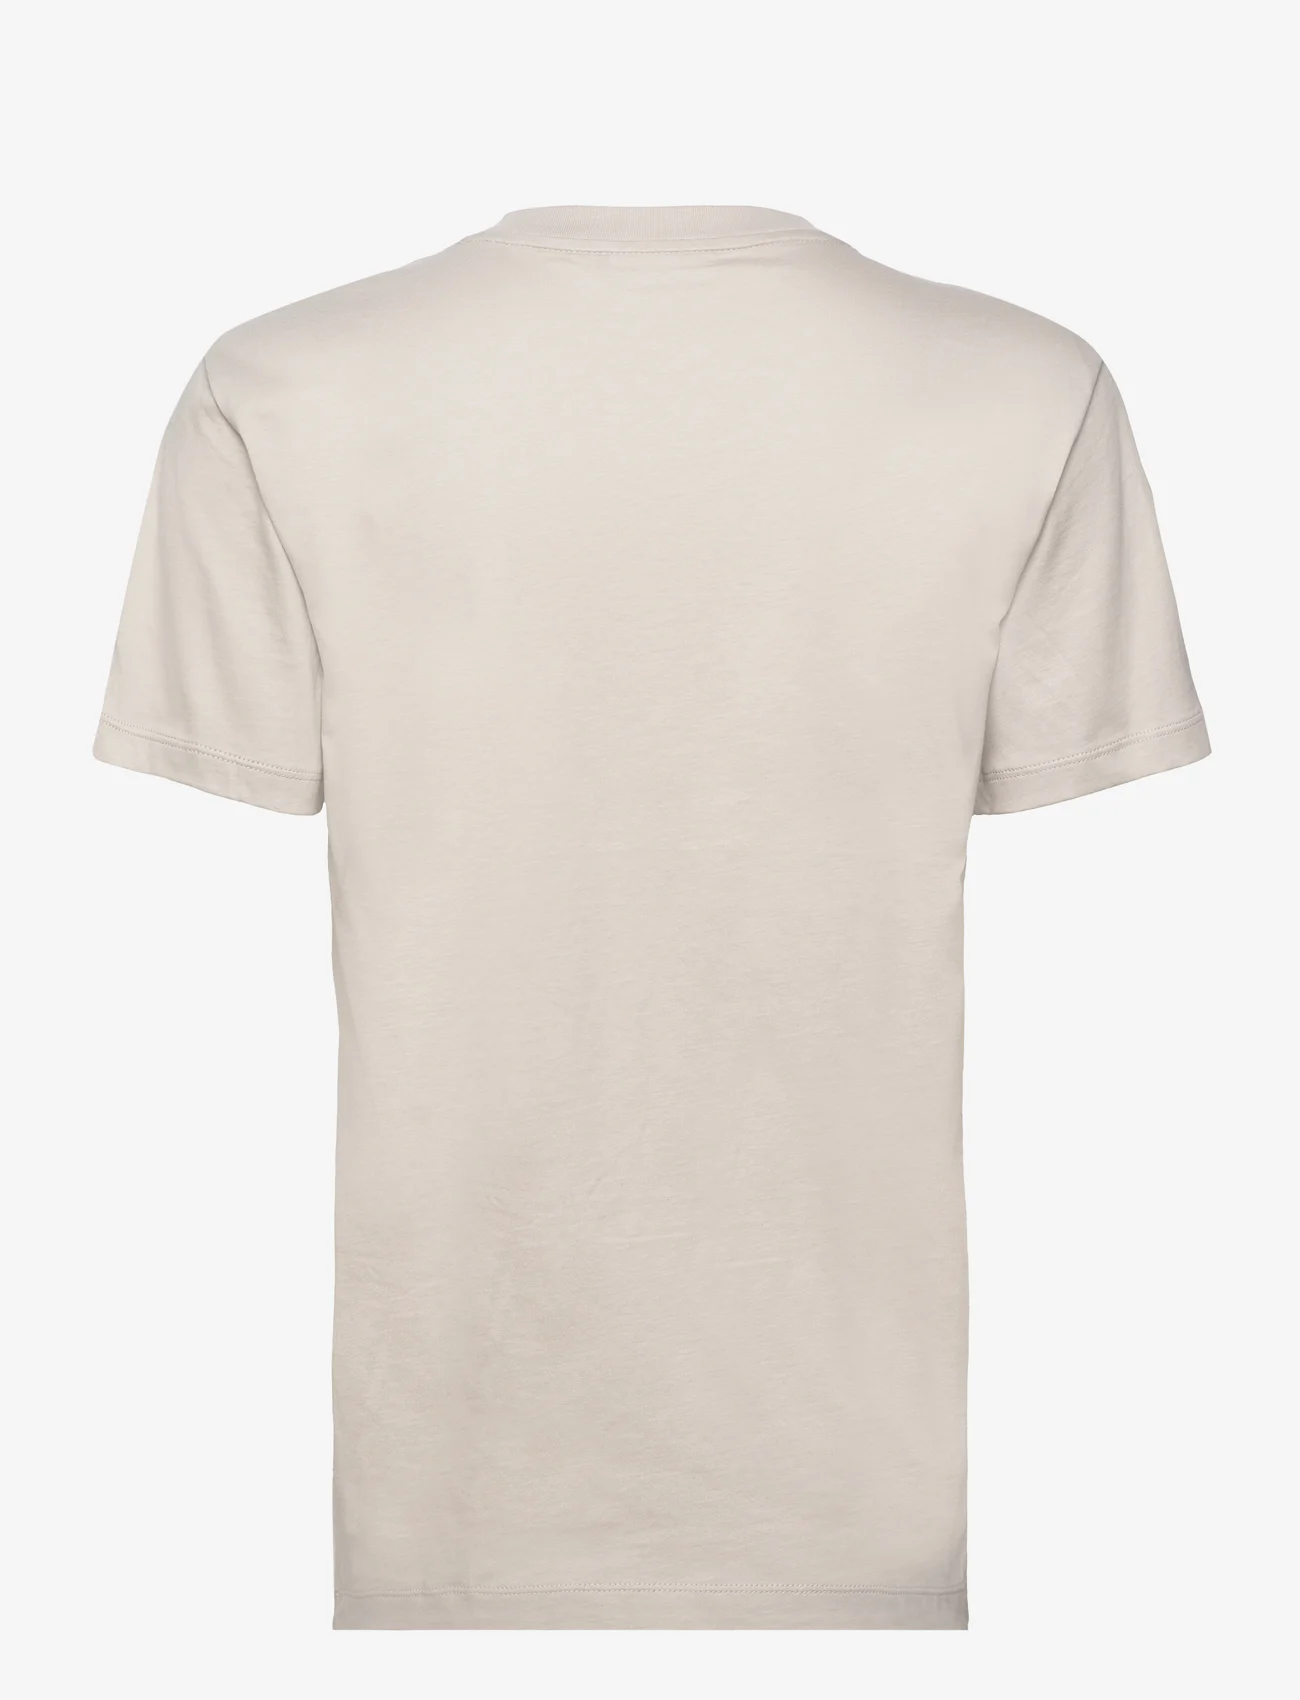 Calvin Klein - METALLIC MICRO LOGO T SHIRT - t-shirts - morning haze - 1